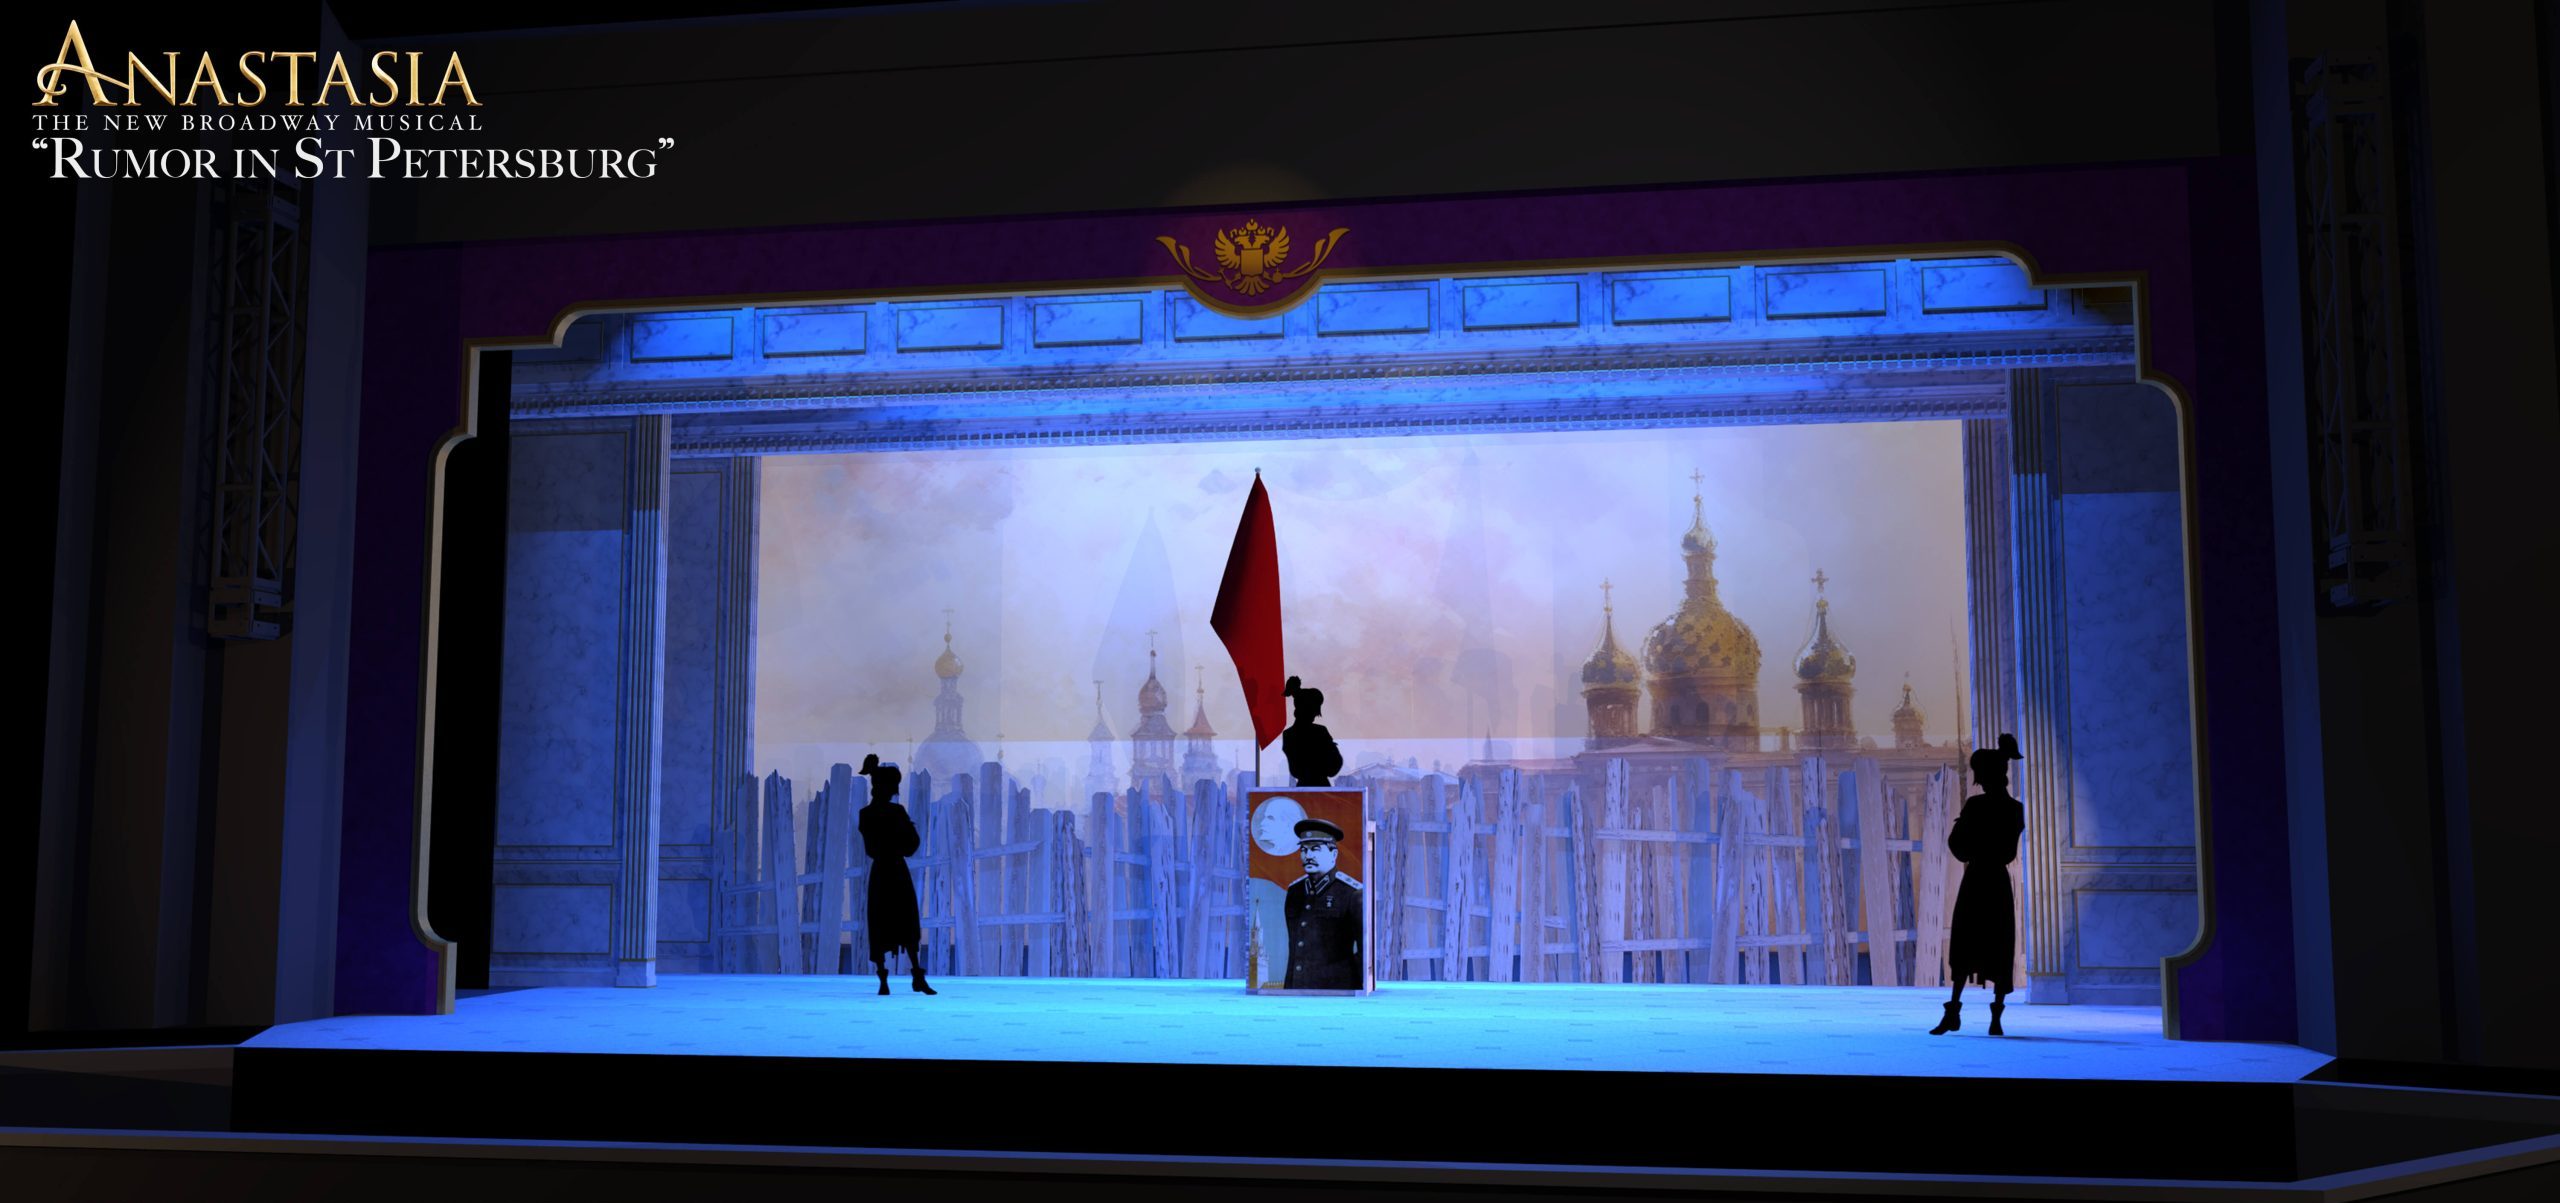 Anastasia scenery rental - rumor in St. Petersburg musical scene - Front Row Theatrical Rental